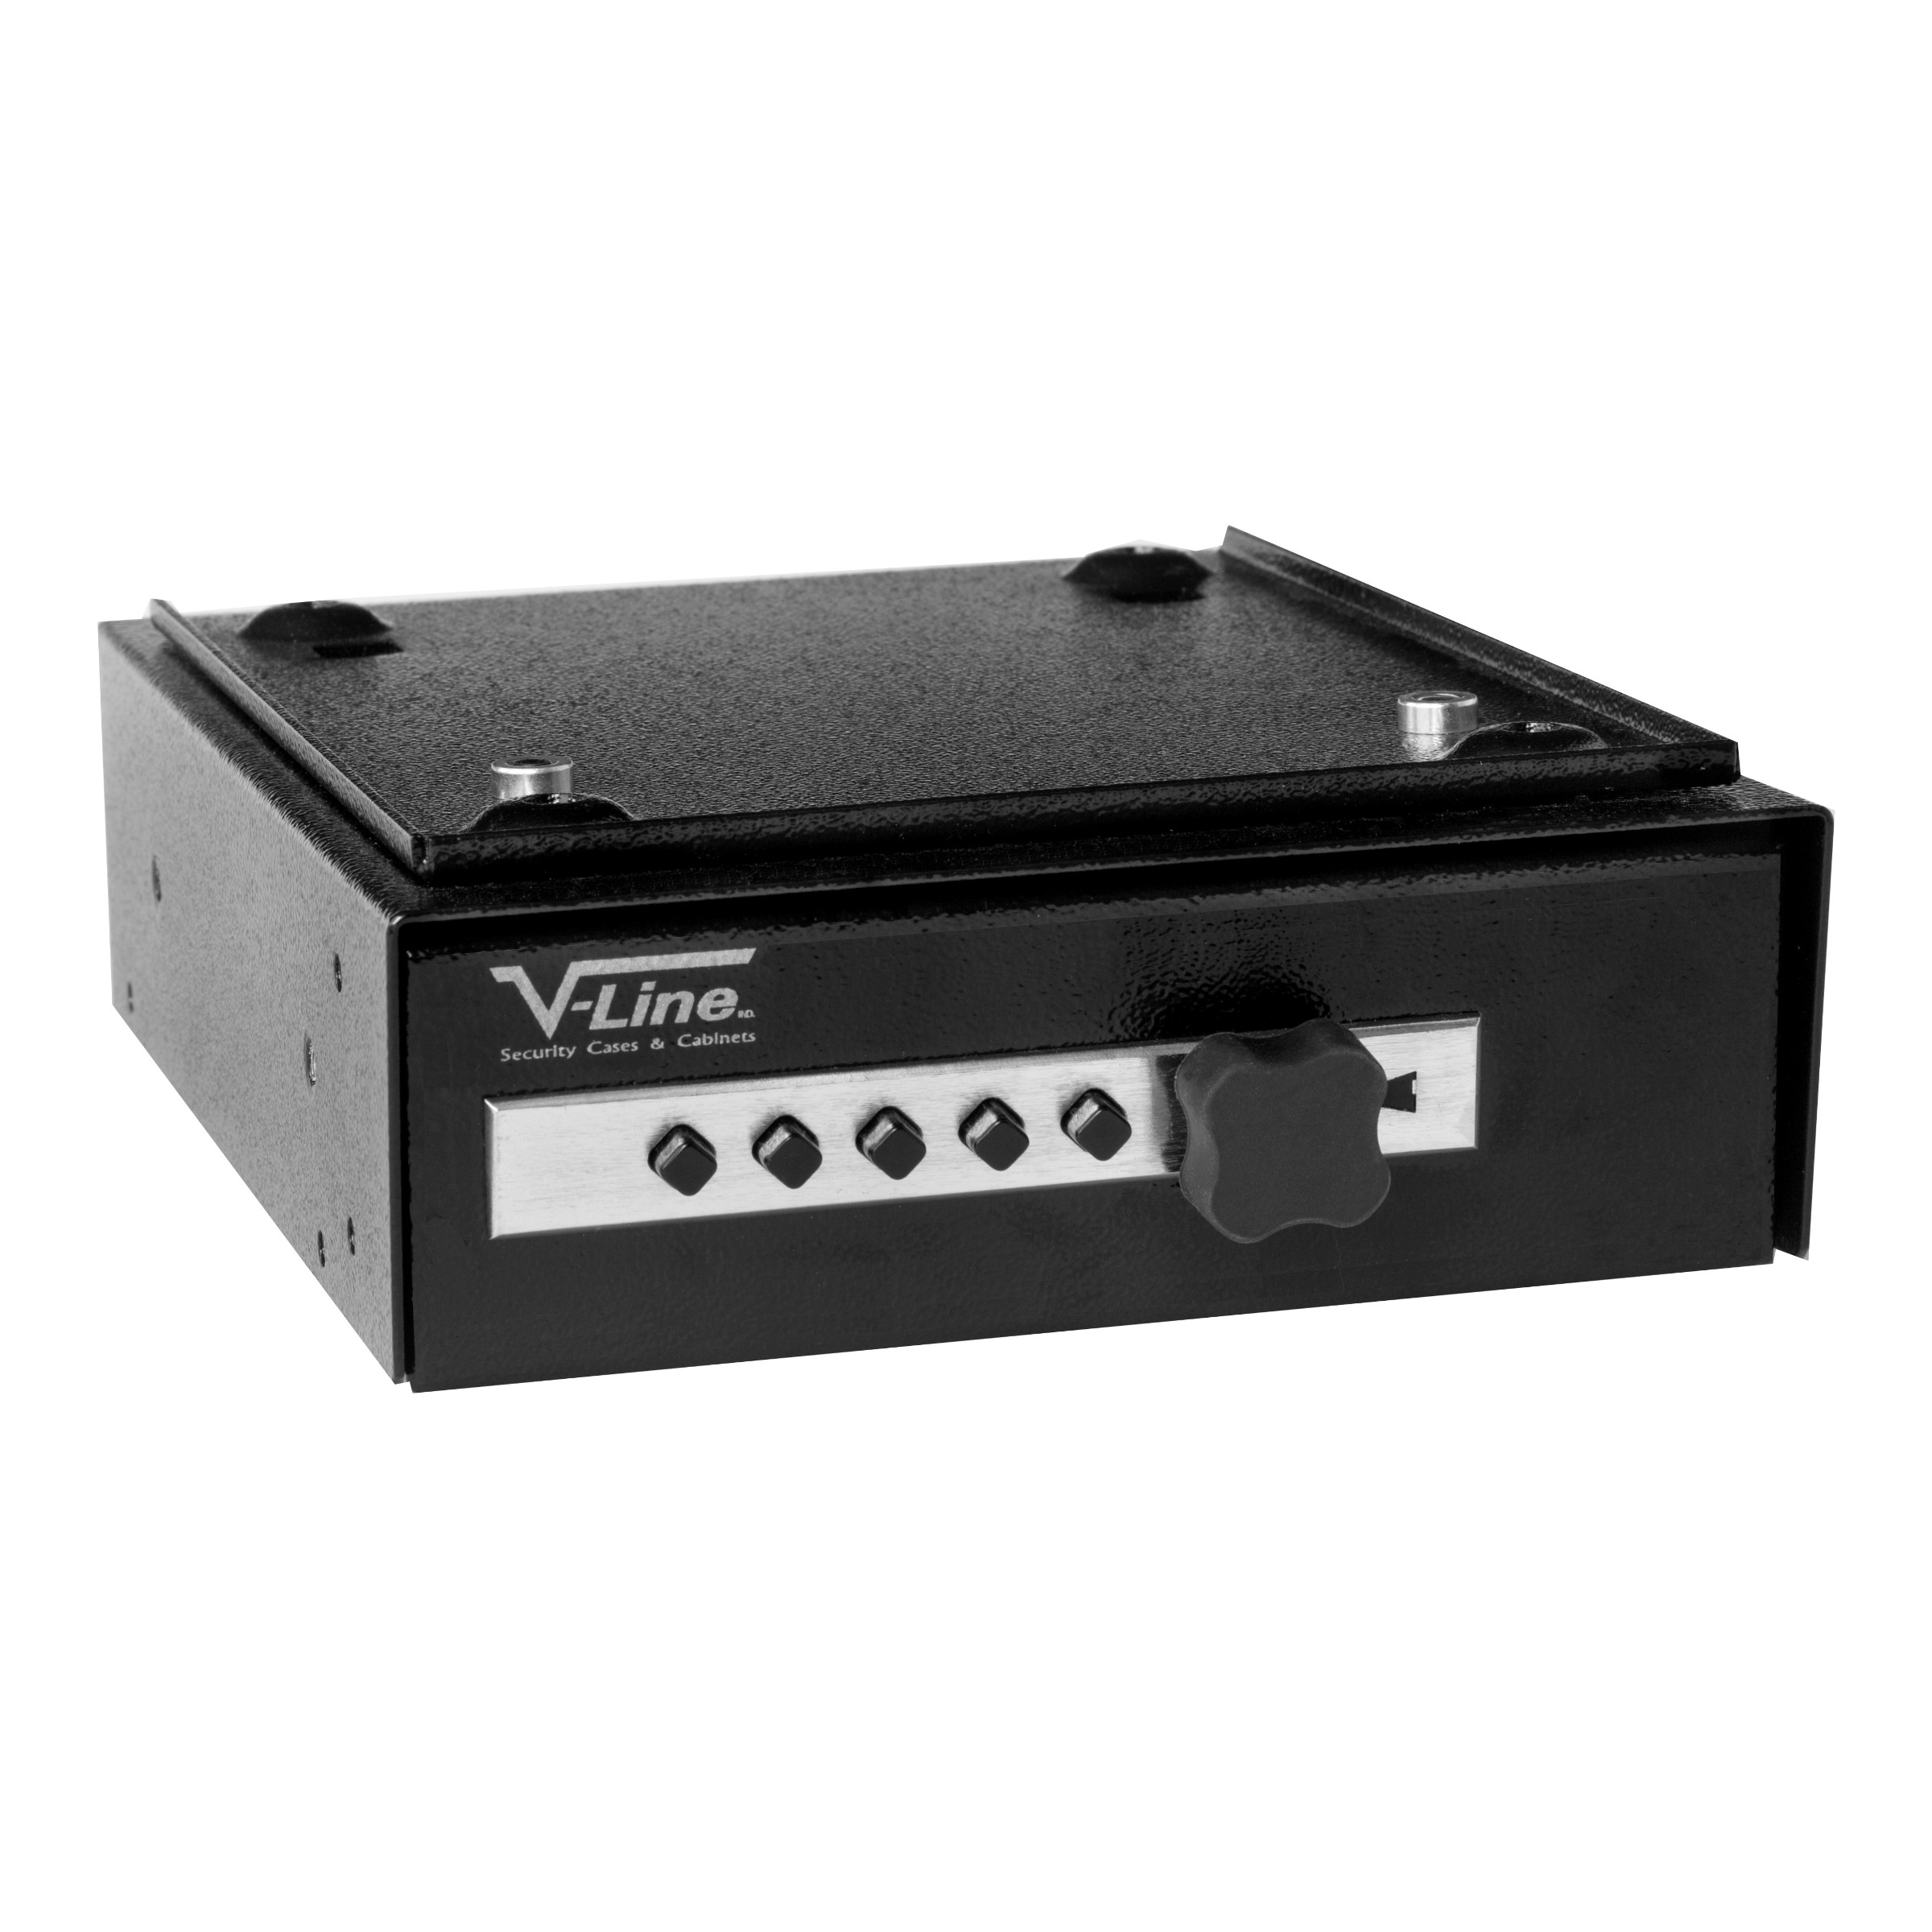 Deskmate safe, V-line model 2597S